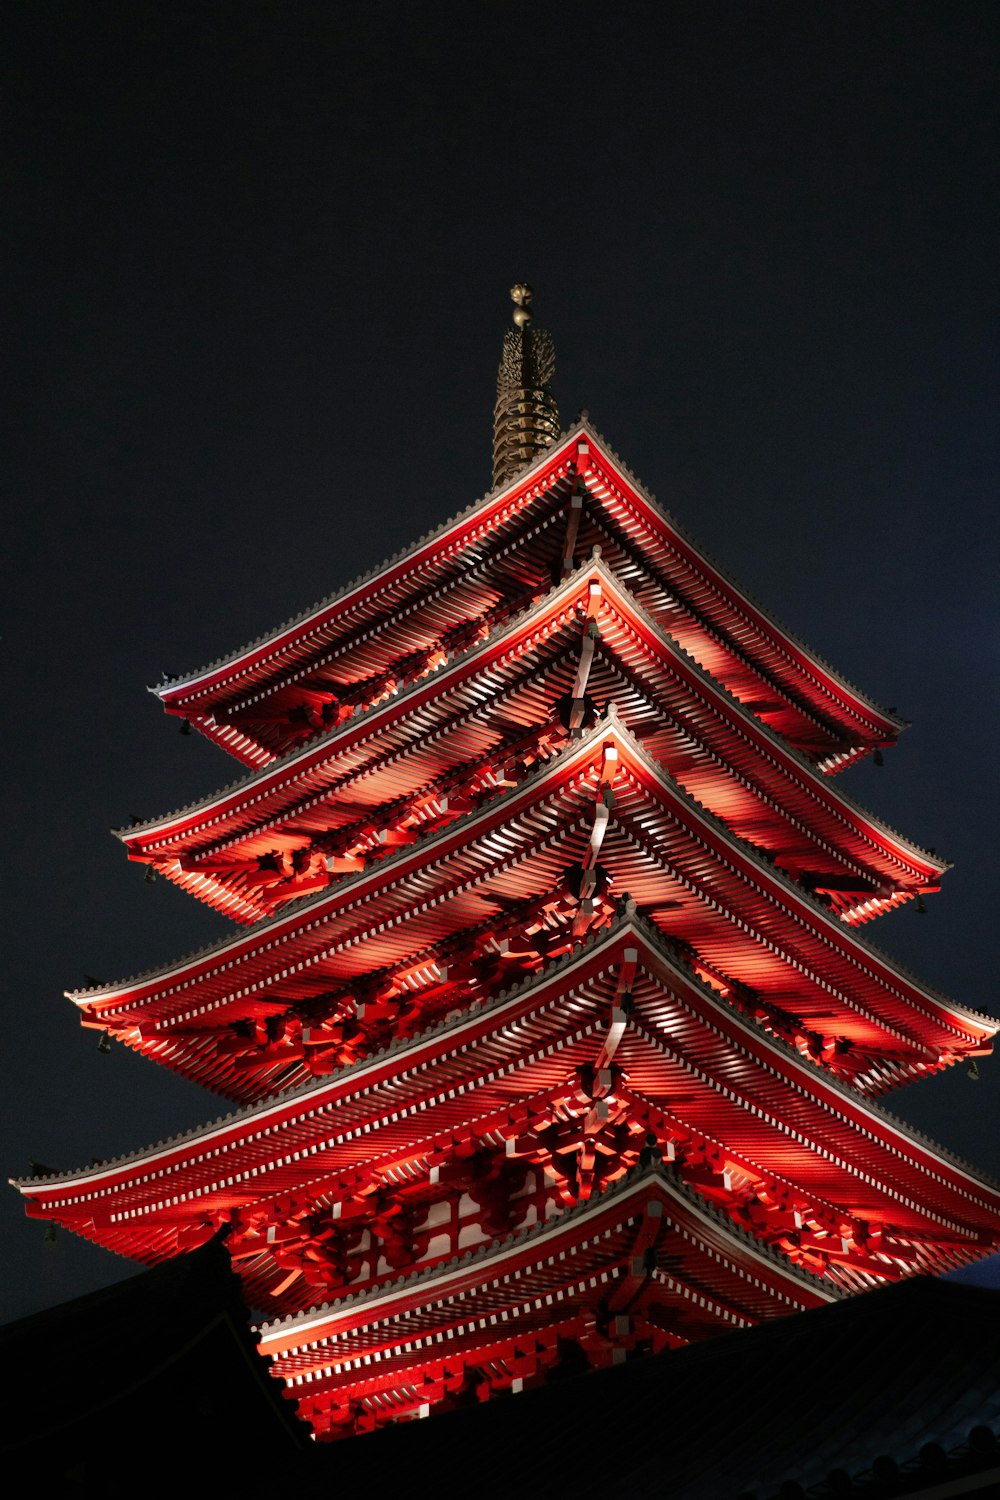 Temple rouge pendant la nuit